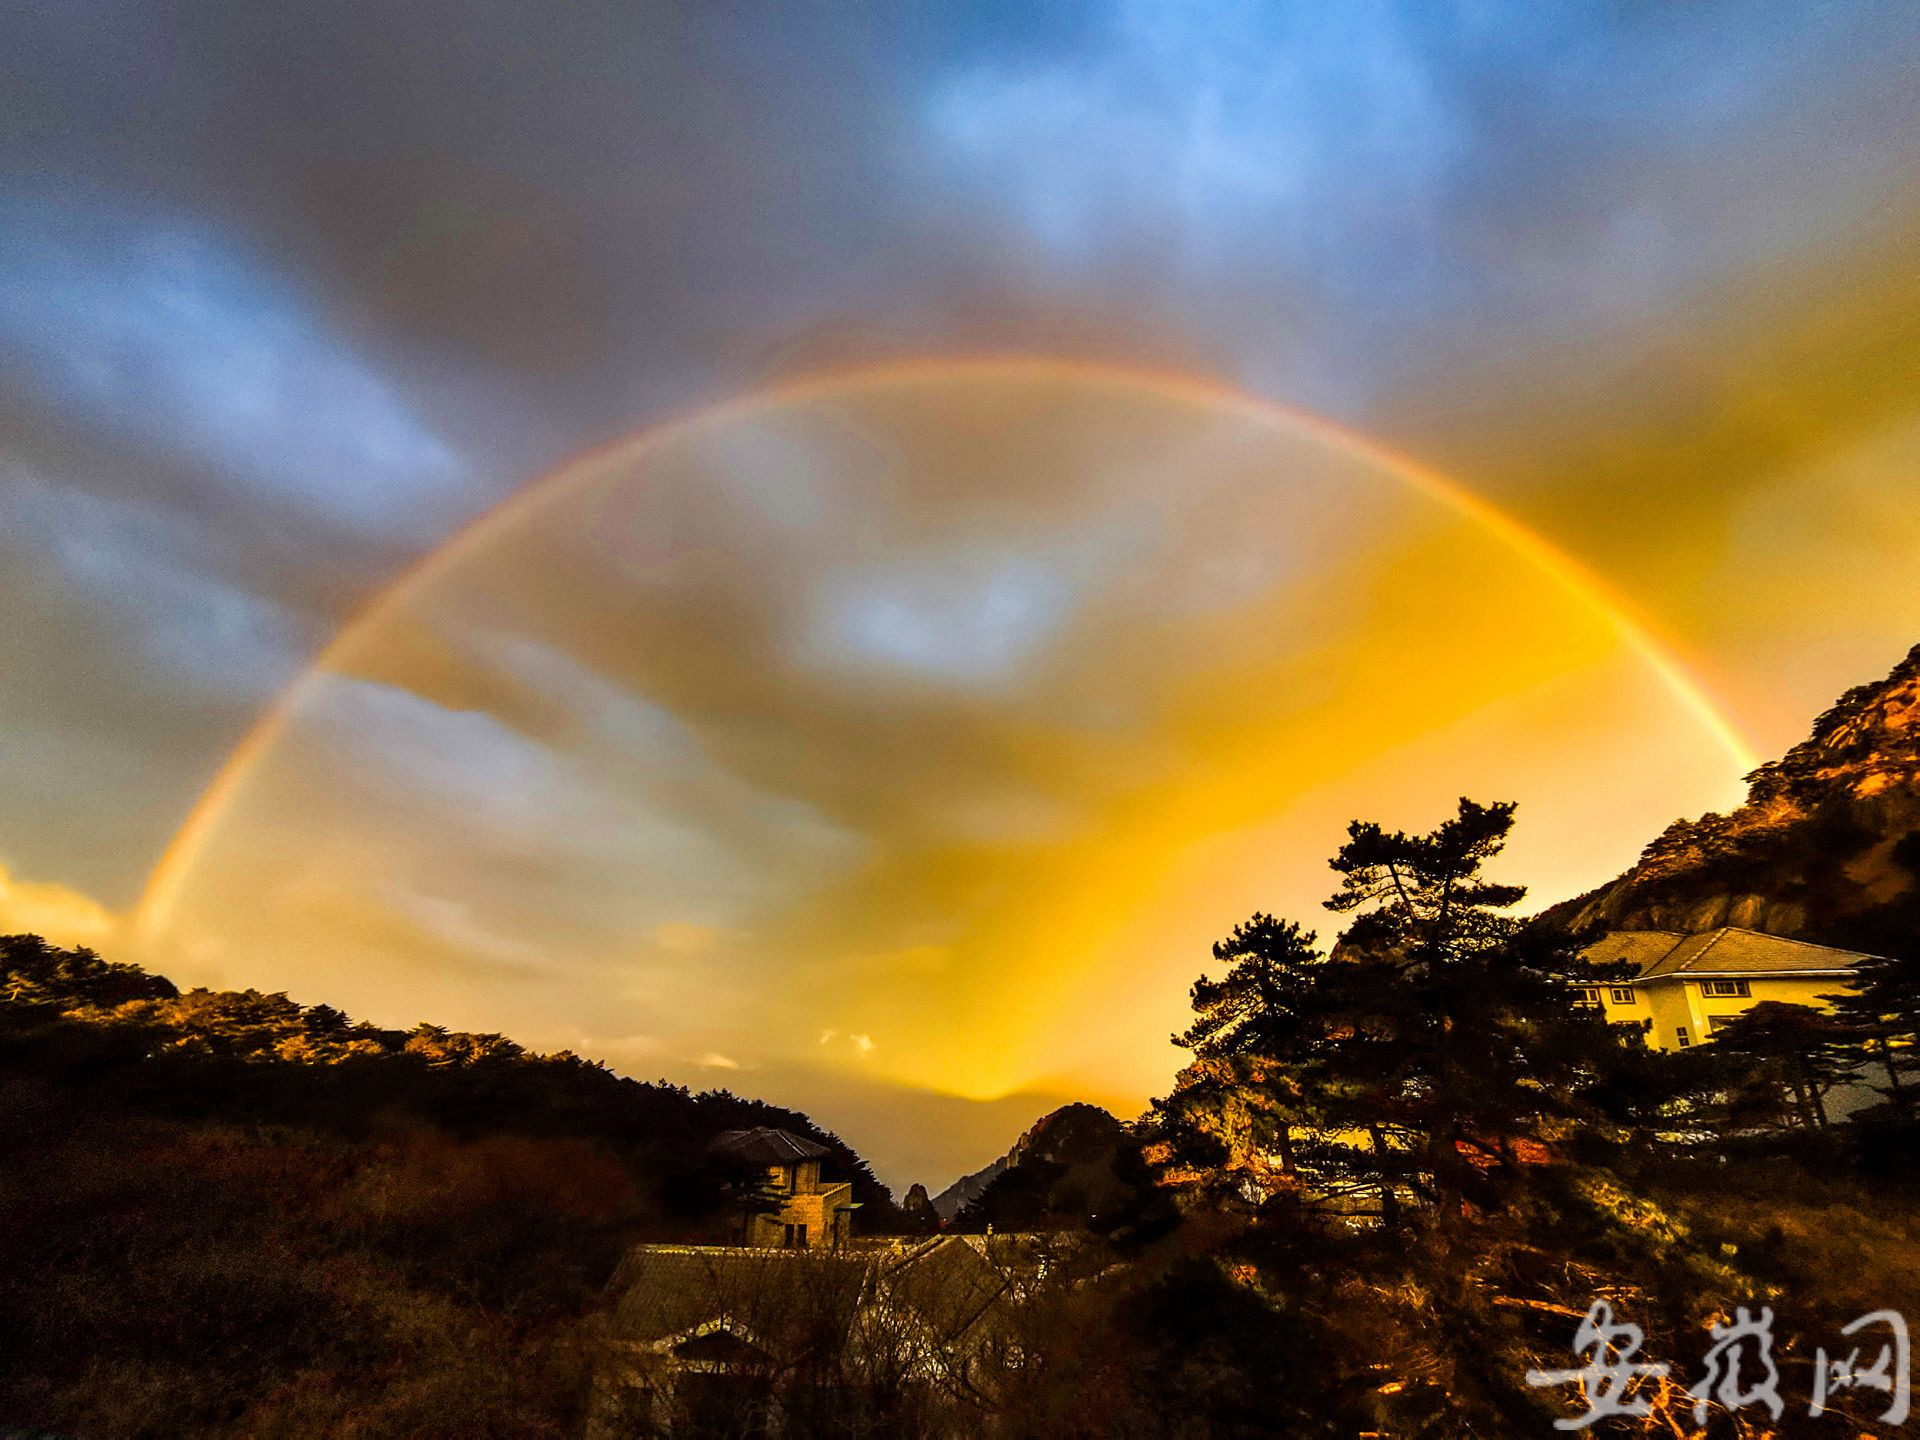 黄山现奇景:东边日出西边雨 双彩虹与佛光舞(组图)